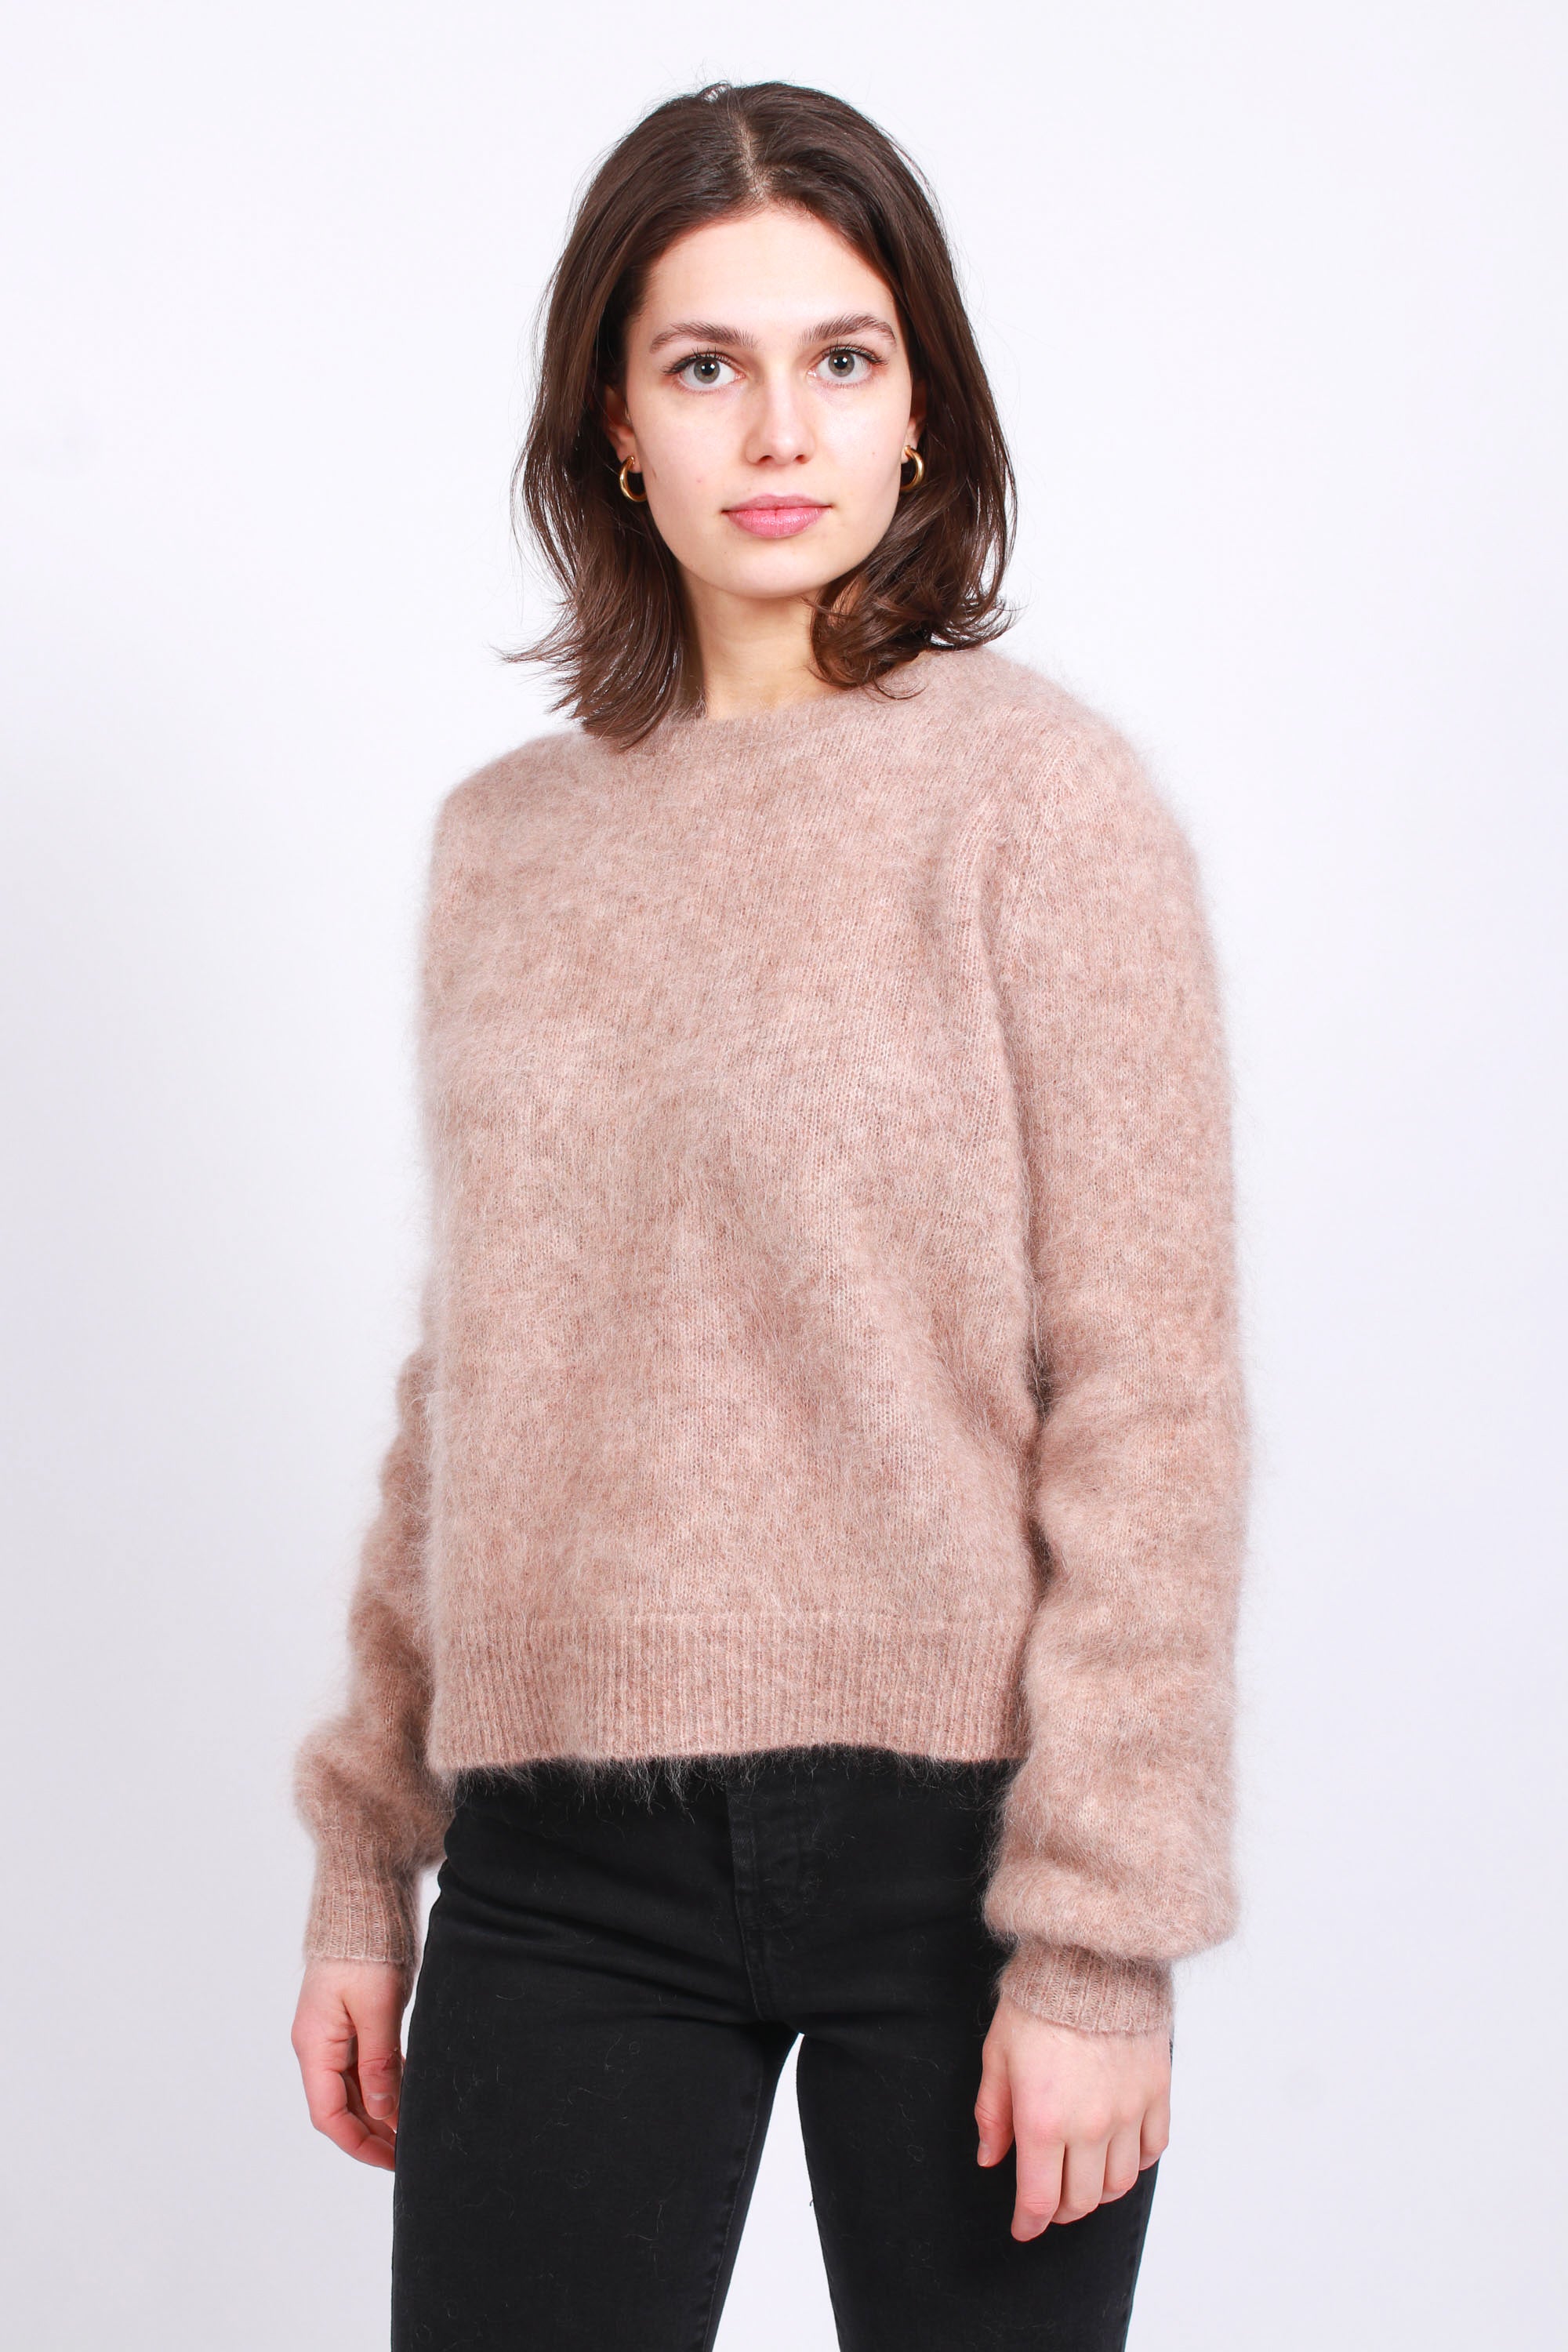 Mirabella Mohair Sweater - Camel - Ella & il - Gensere - VILLOID.no